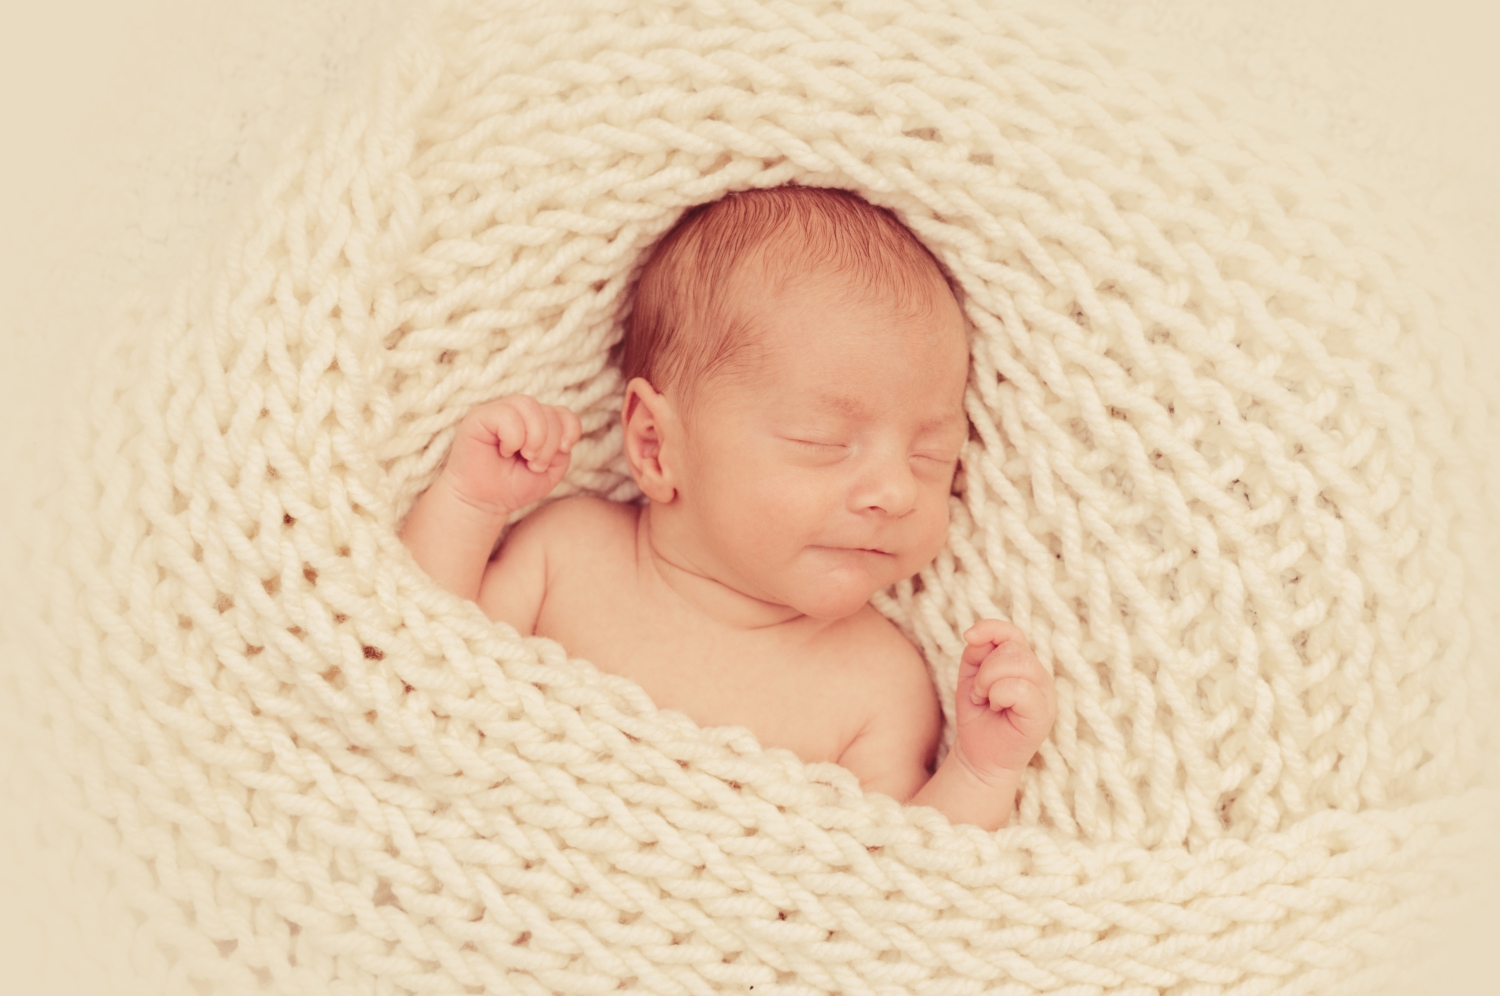 max_fertaBabyshooting Fotoshooting Newborn Neugeborenenfotografie Dresdenig_52_klein